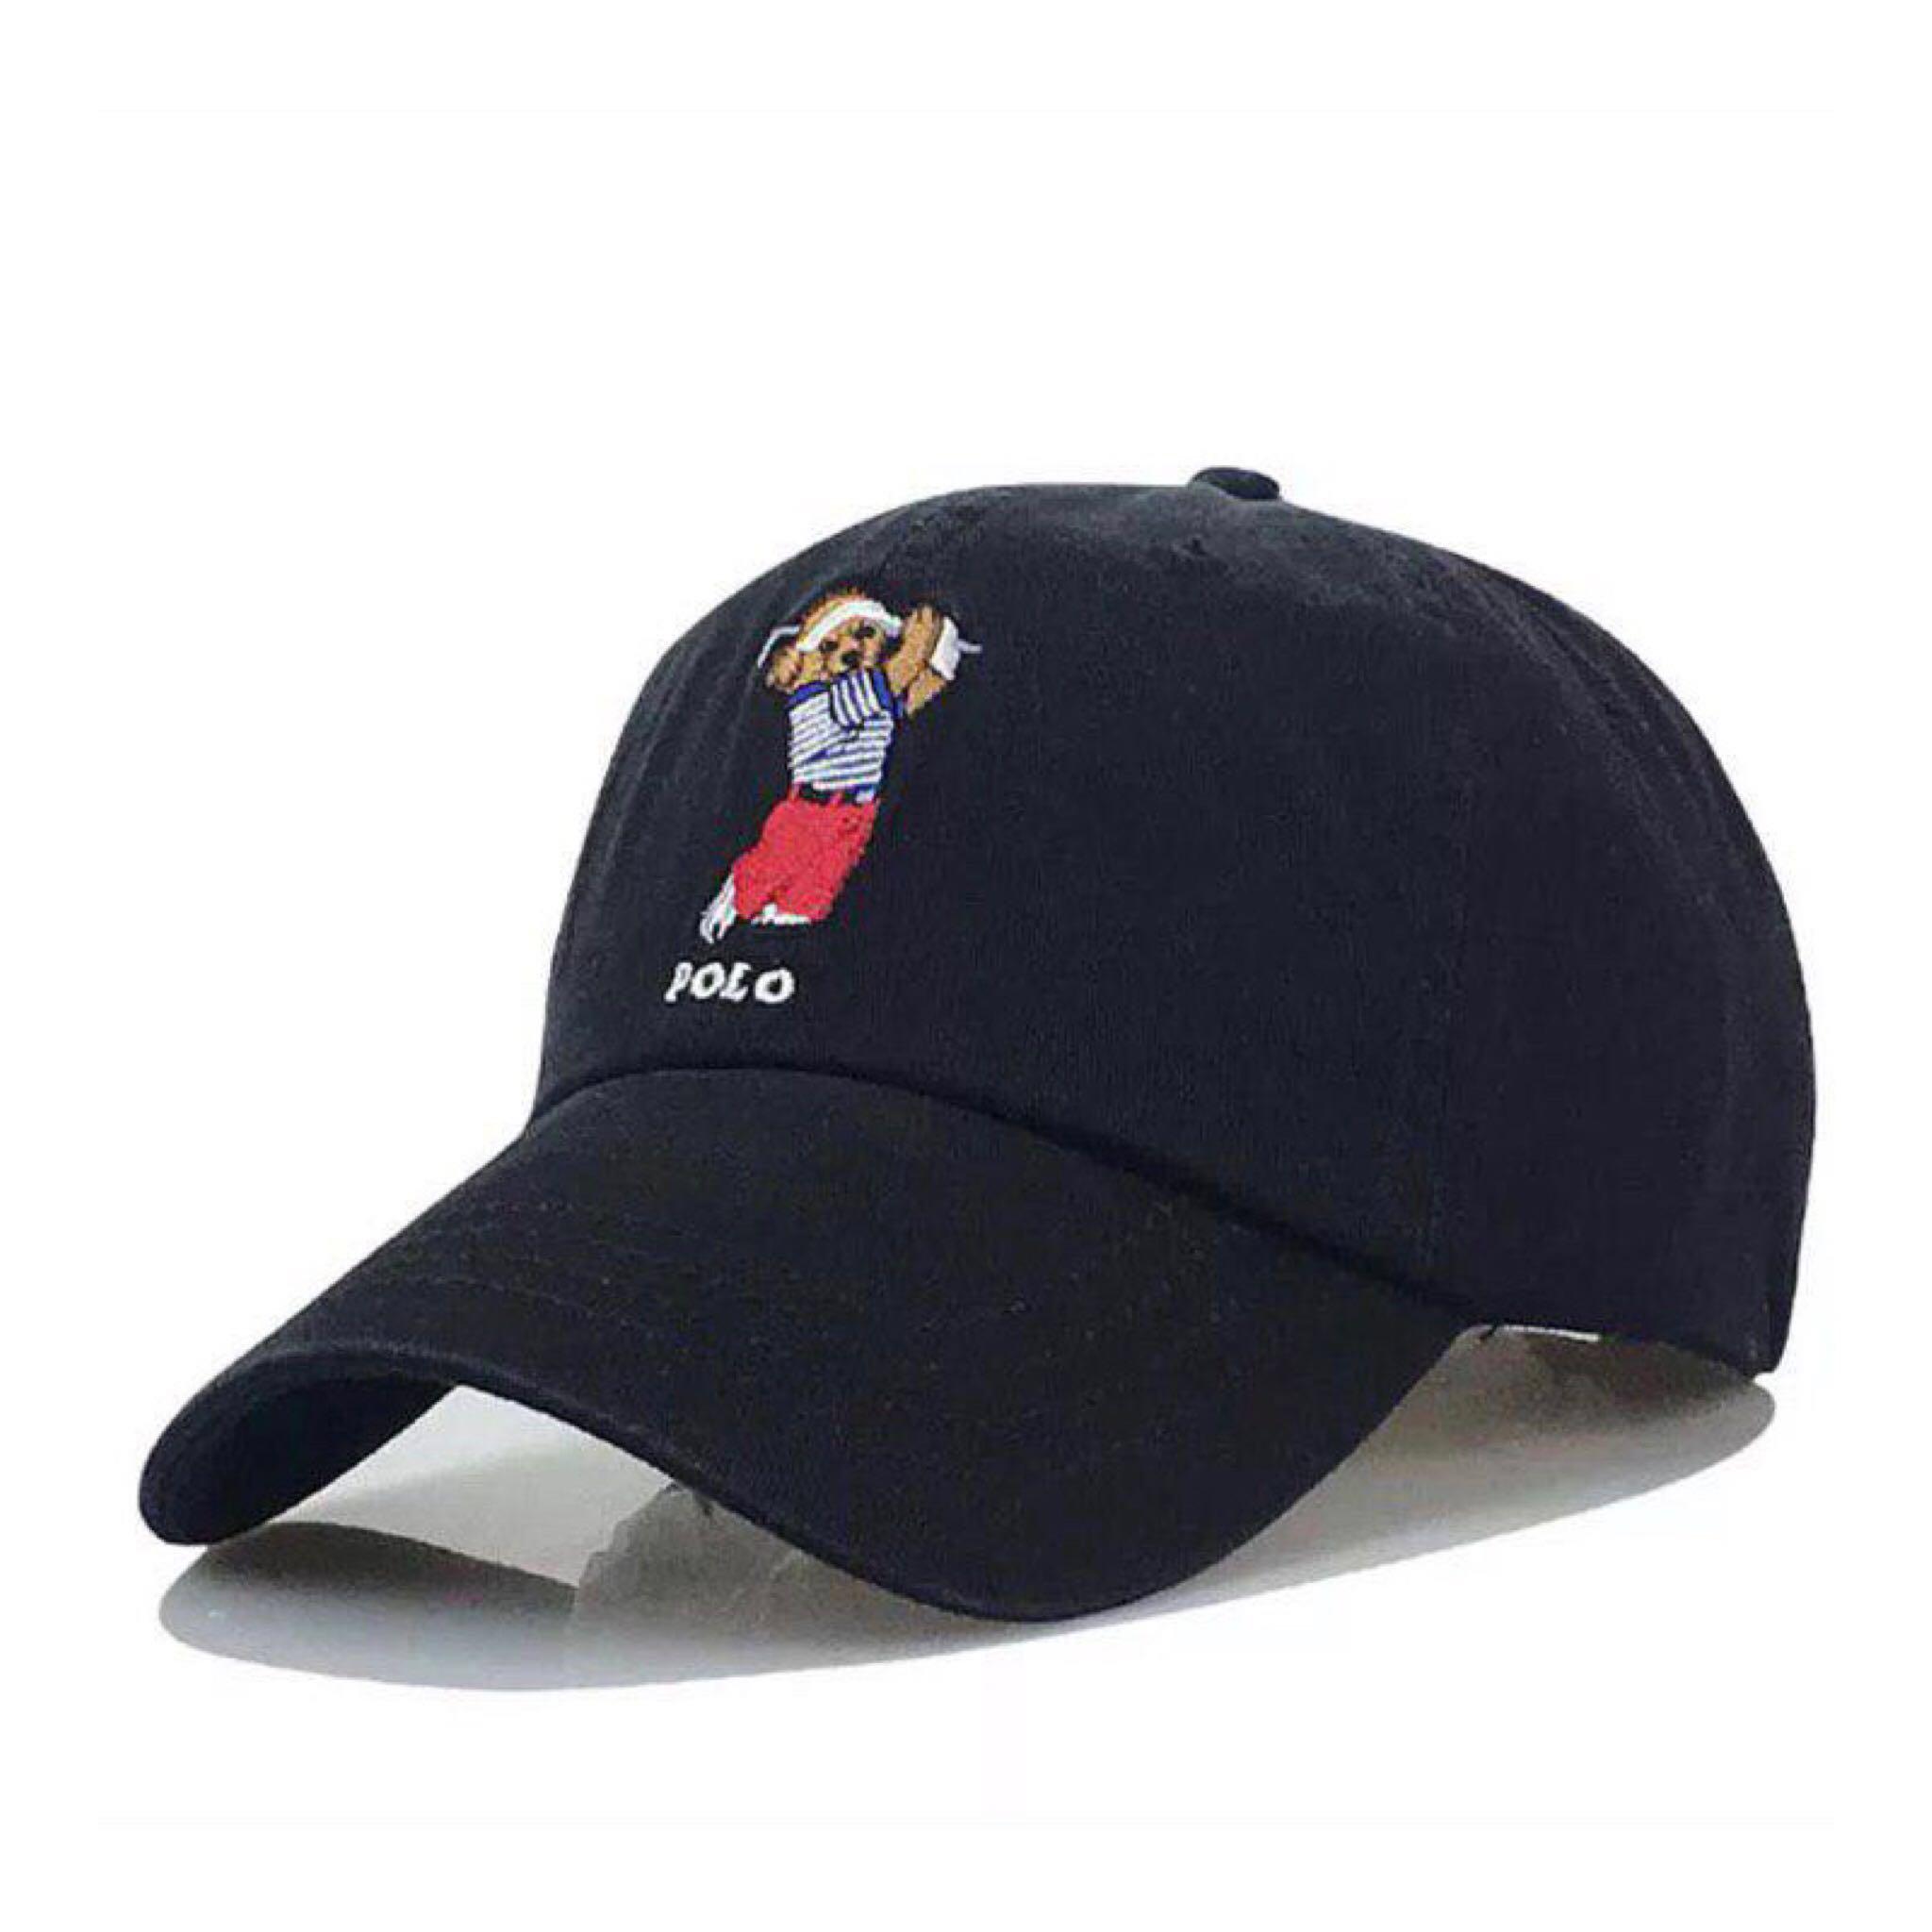 polo ralph lauren bear hat